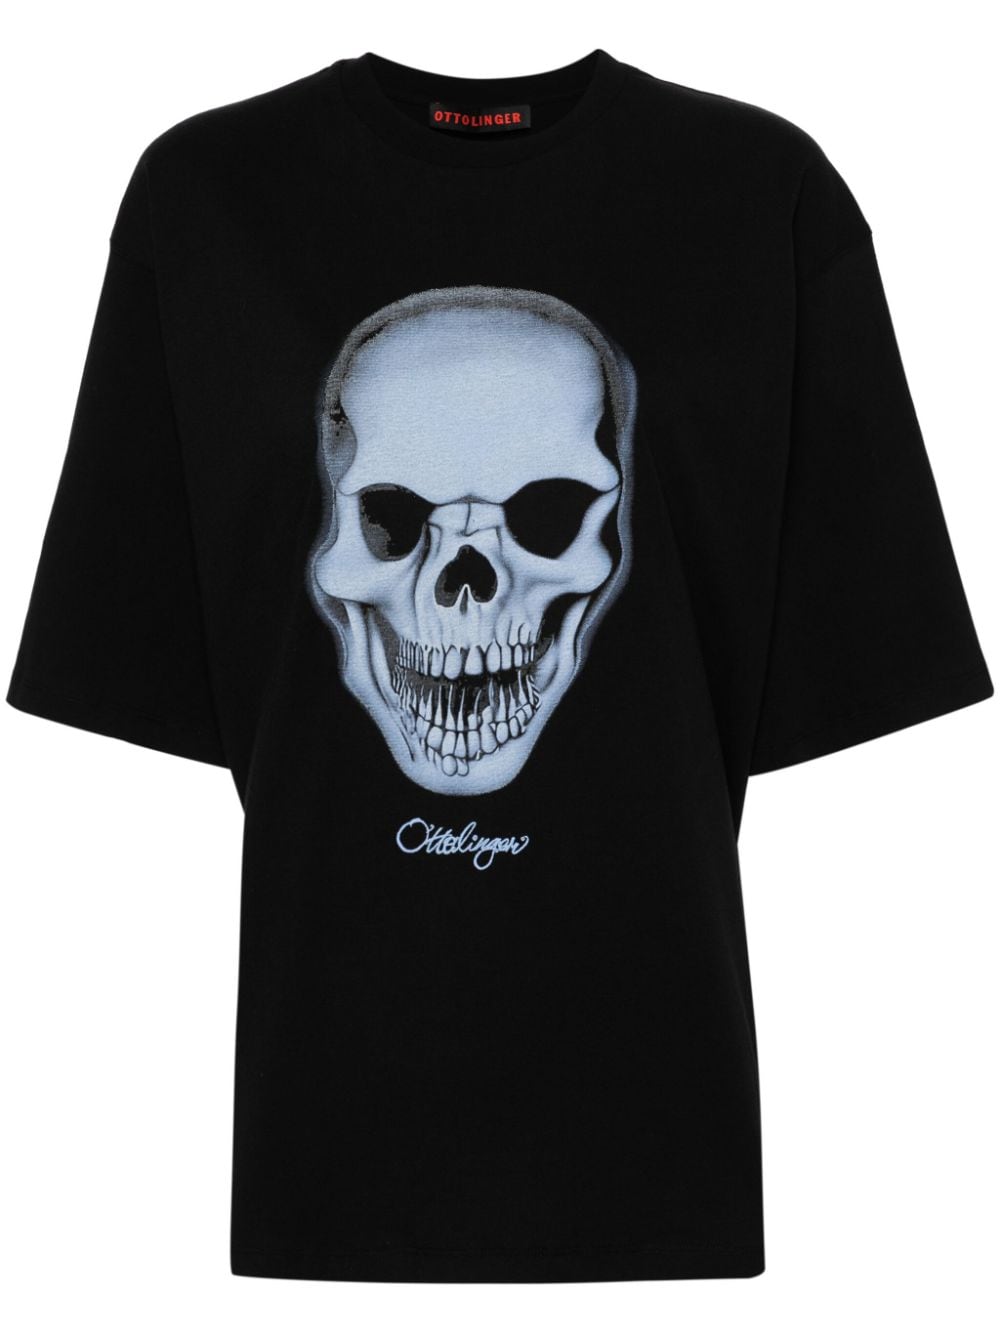 ottolinger t-shirt en coton à imprimé tête de mort - noir